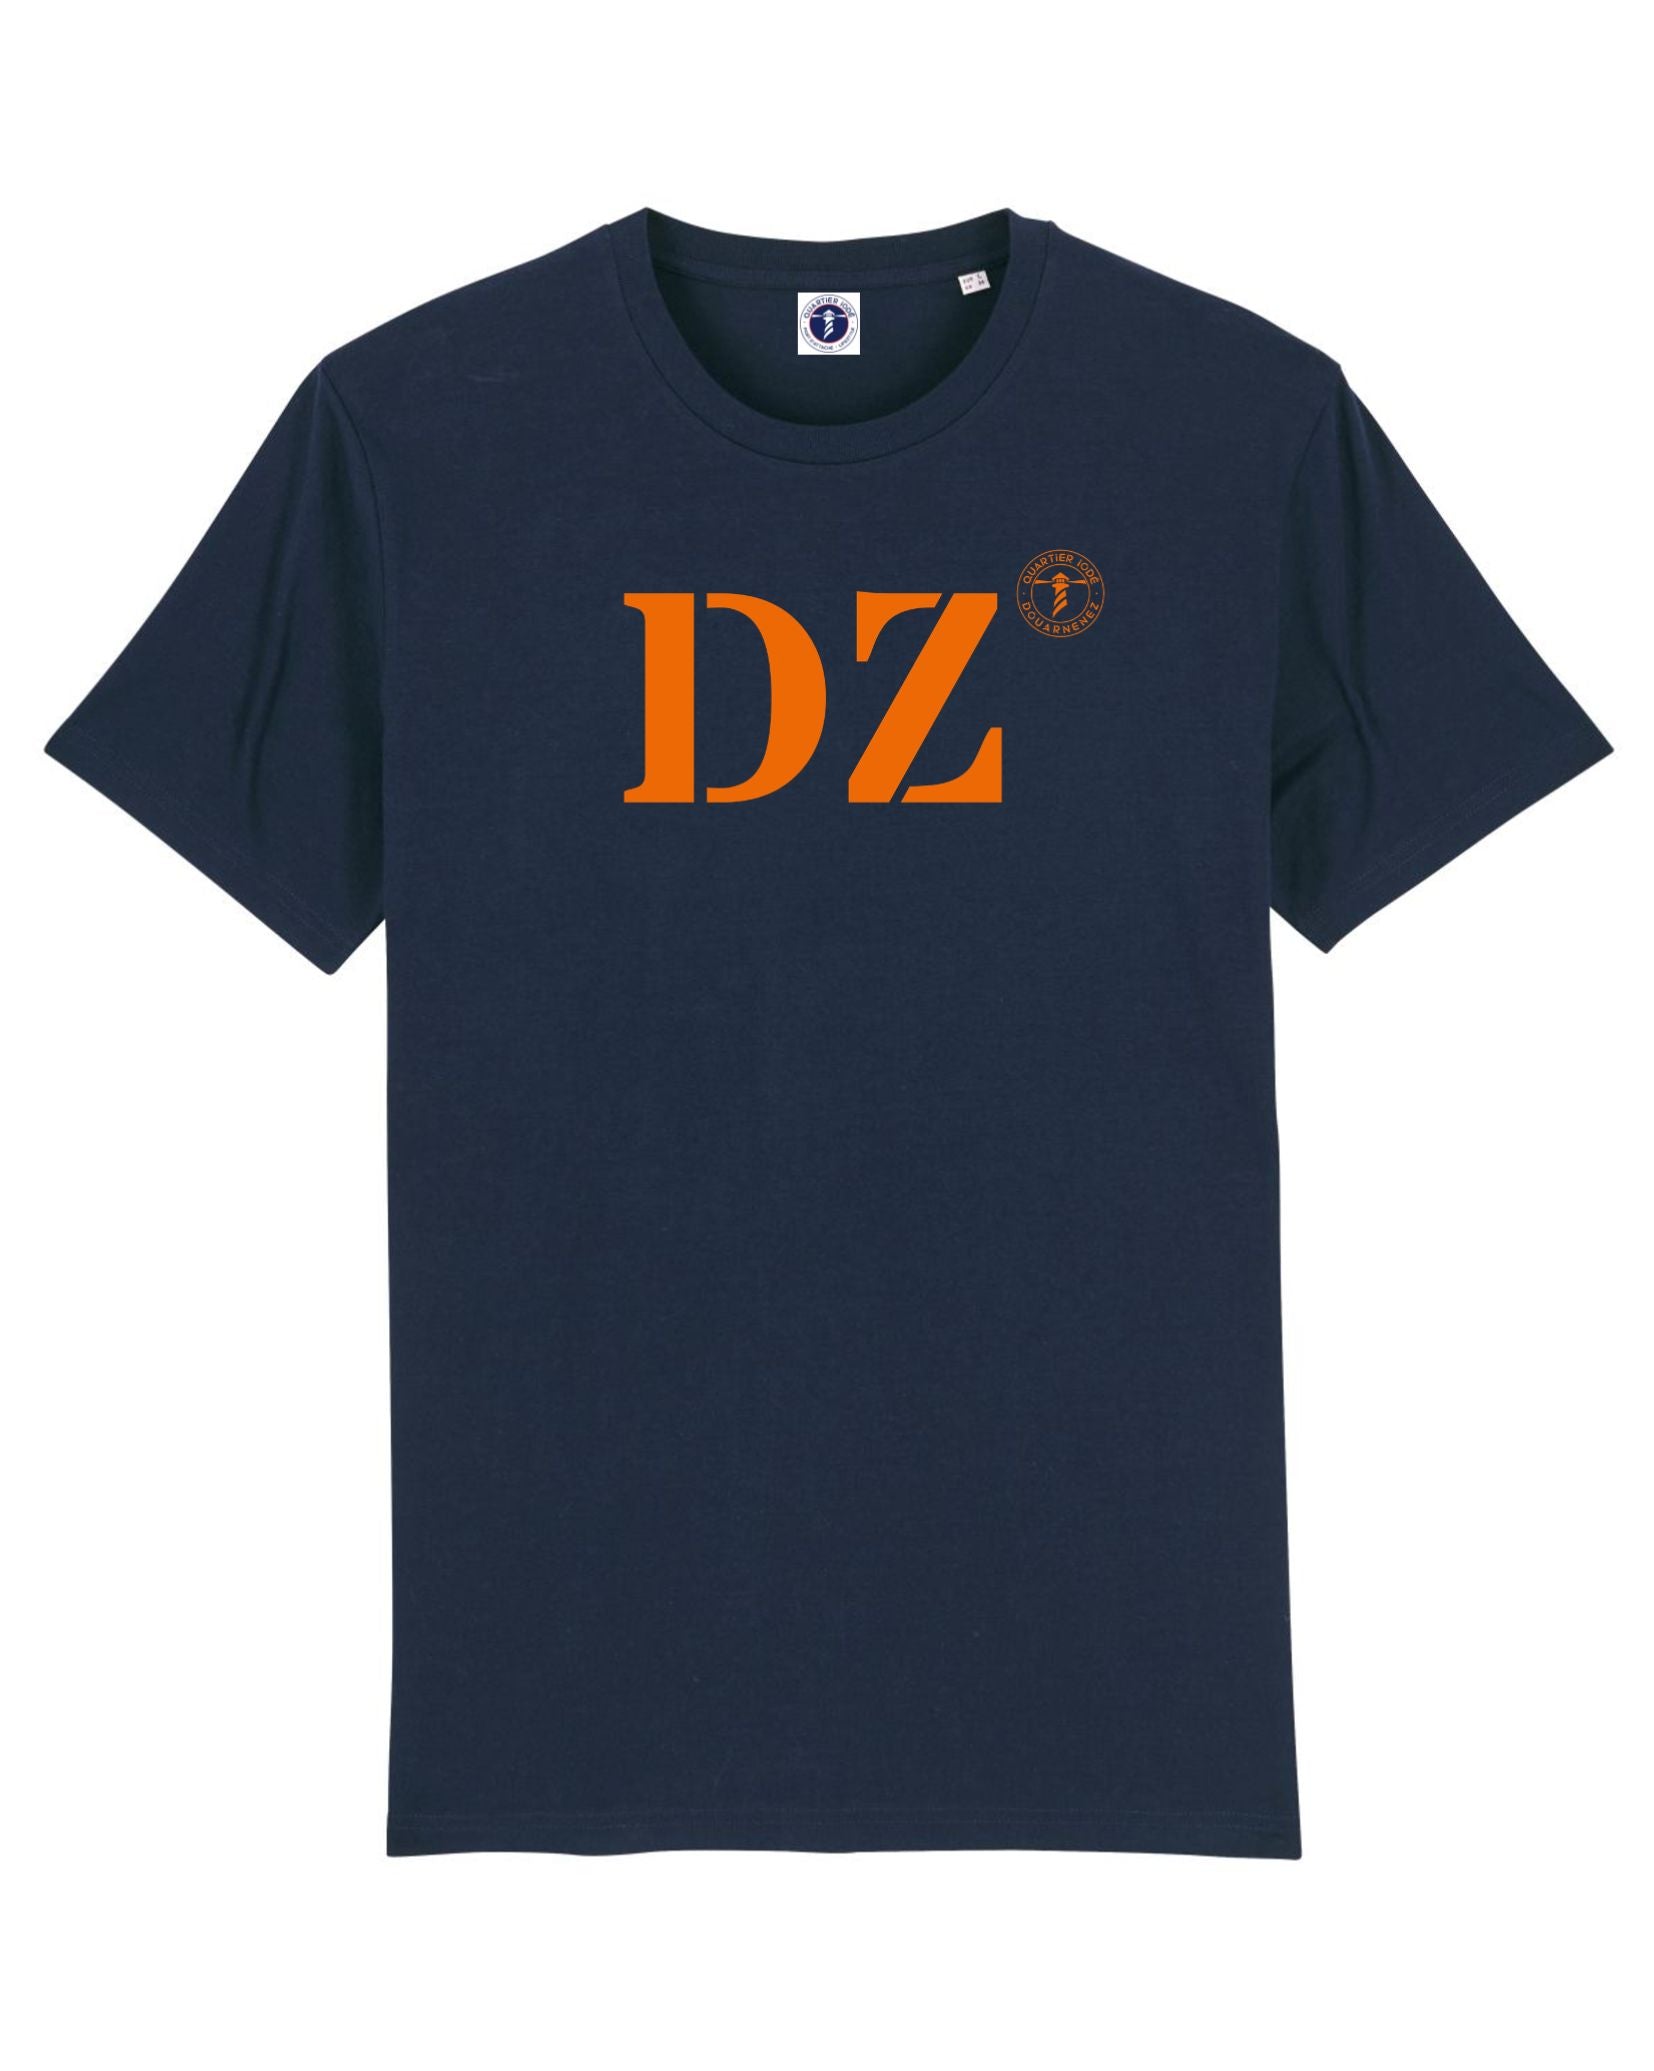 Douarnenez (DZ), Tshirt marin par Quartier Iodé. En coton bio, pour hommes et femmes. 